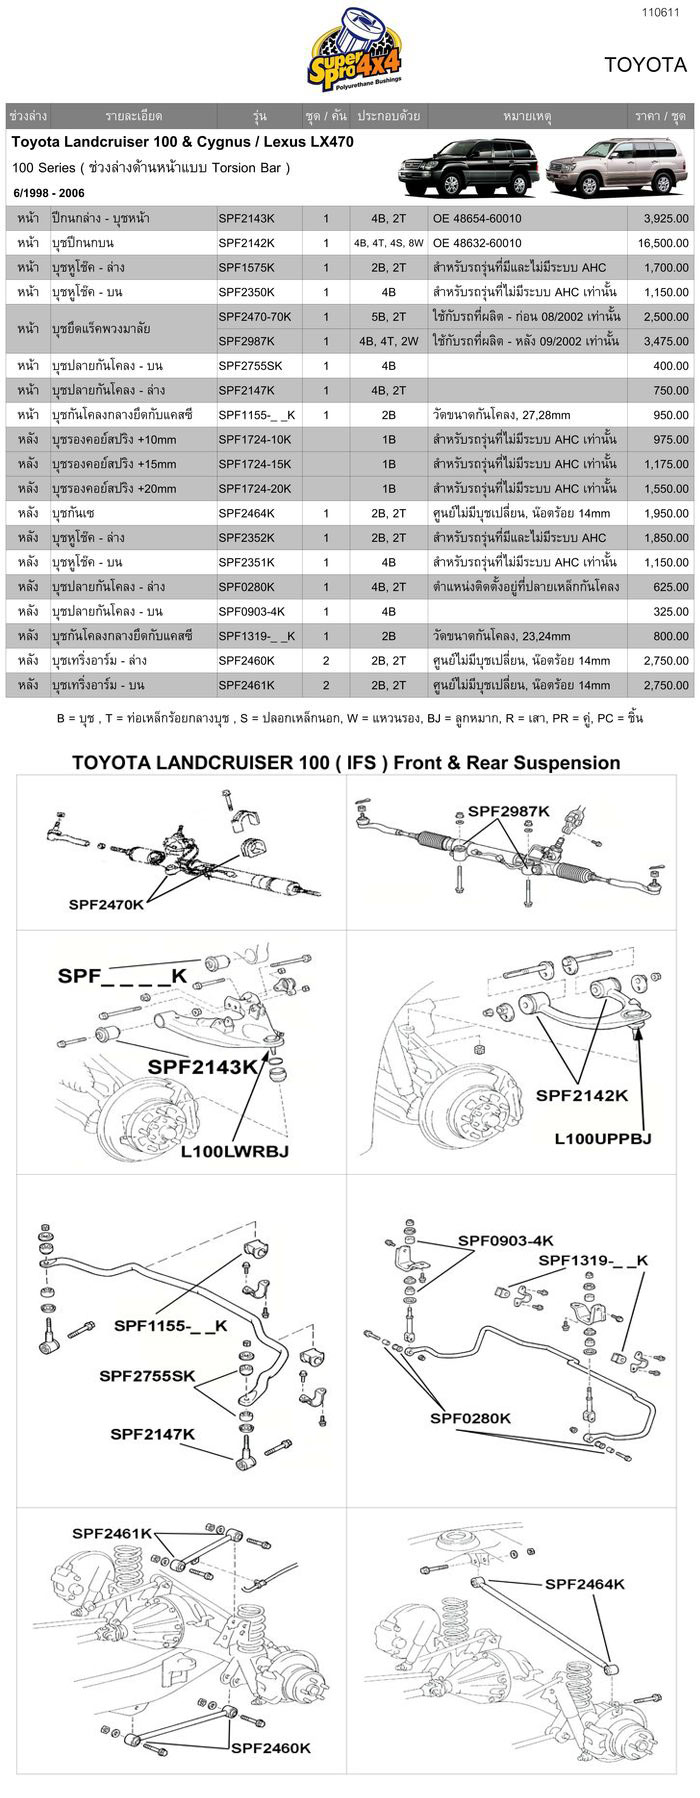 รุ่น Toyota Land Cruiser 100 series ( Independent Front Suspension )ลิงค์เพื่อดาวน์โหลดรายละเอียดของ Toyota Land Cruiser 100 series ( Independent Front Suspension )

